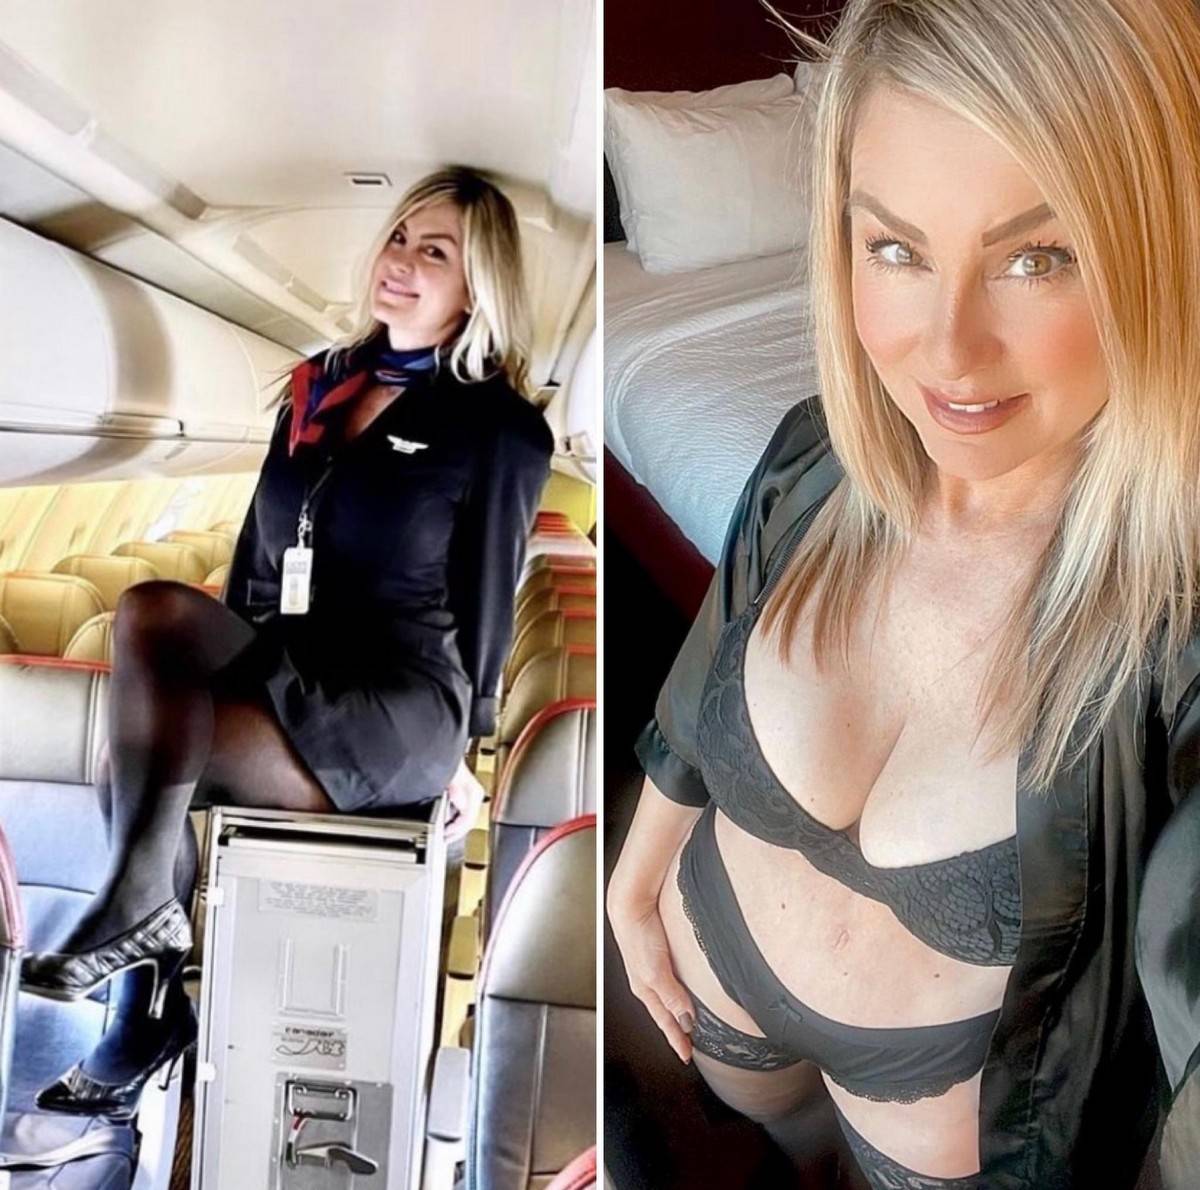 Стюардессы занимаются с летчиком сексом в отеле